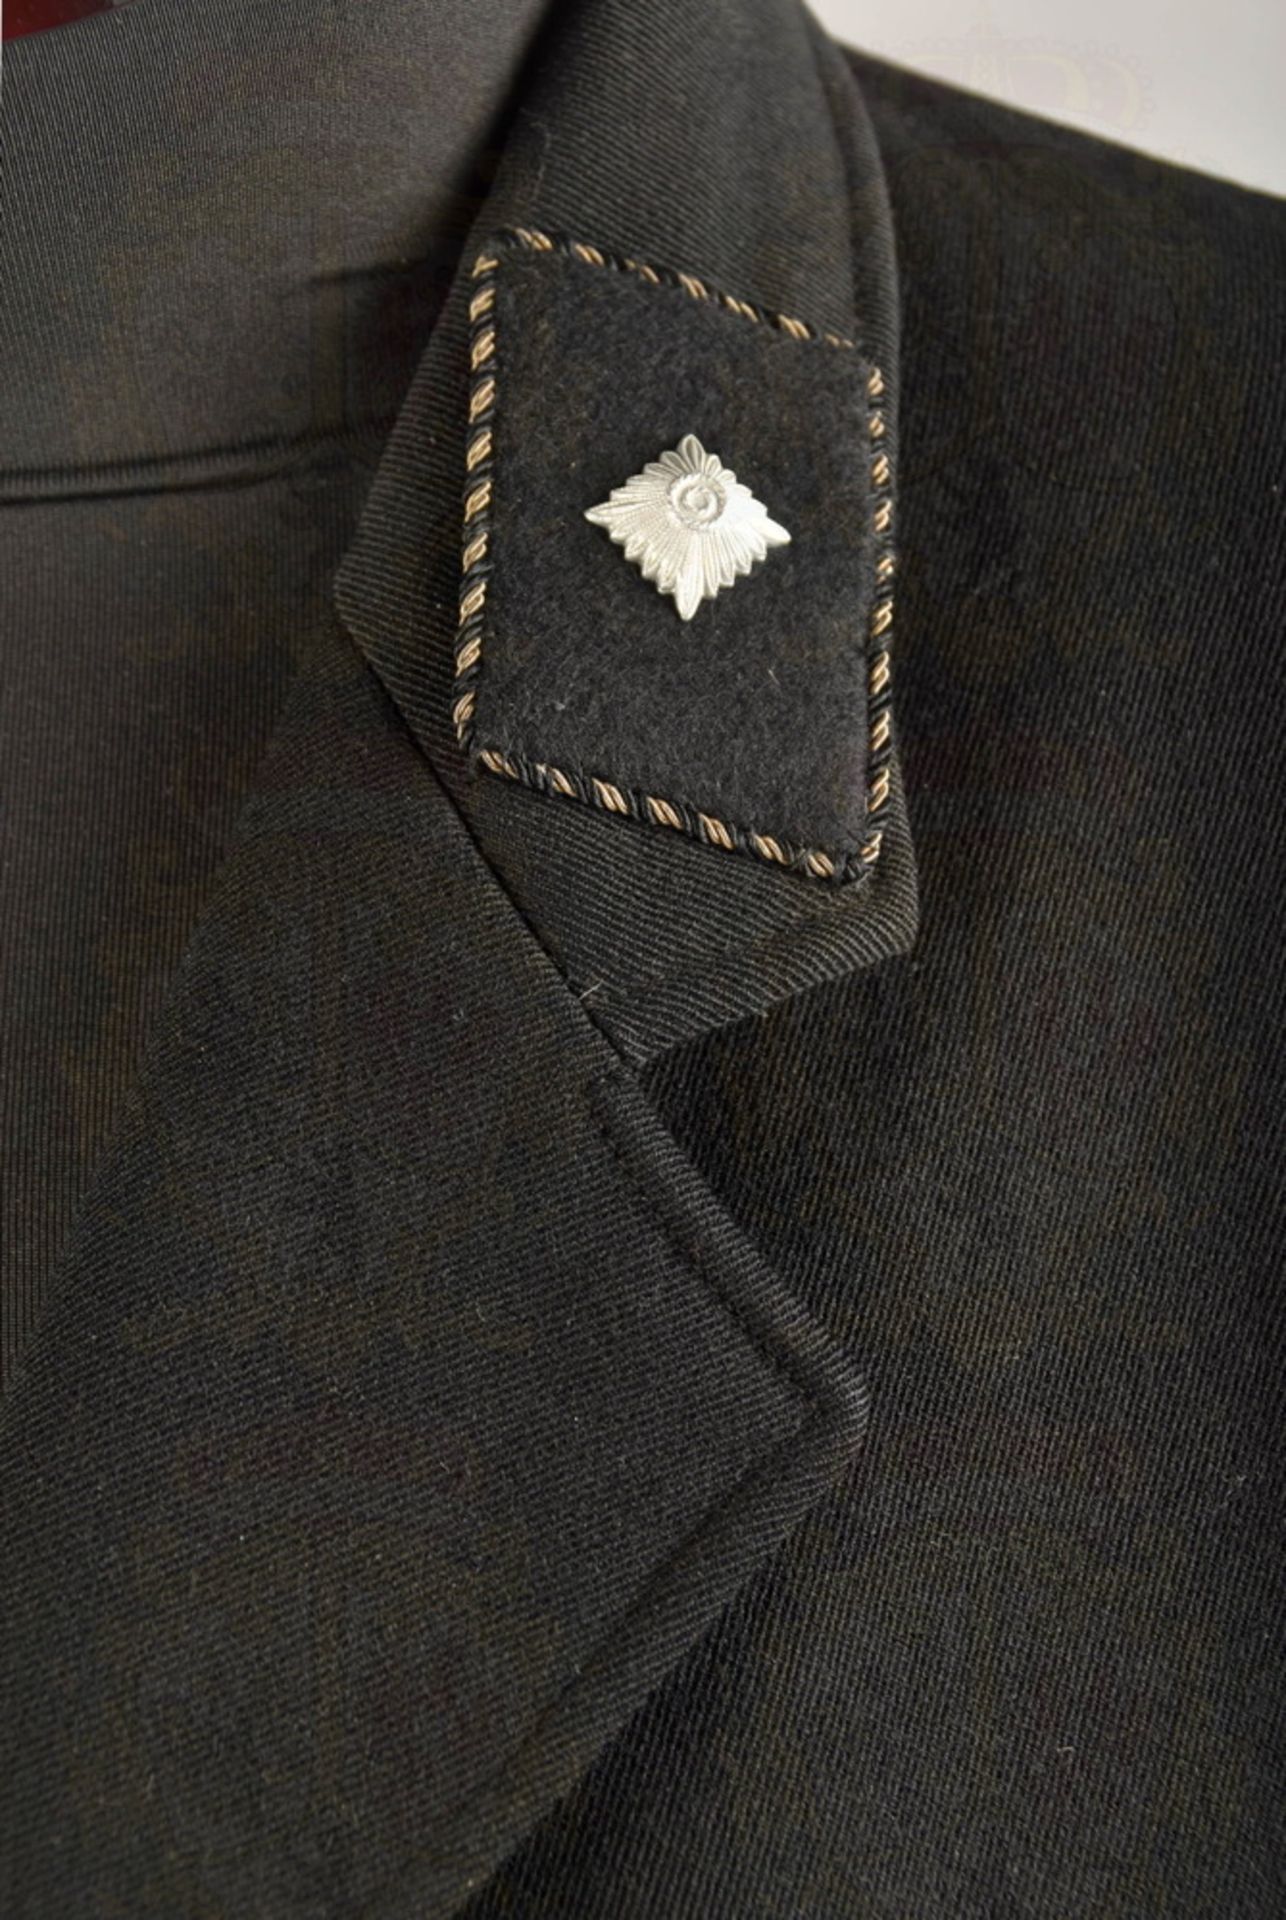 Tunic of a Leibstandarte SS Unterscharführer/SS NCO - Image 12 of 12